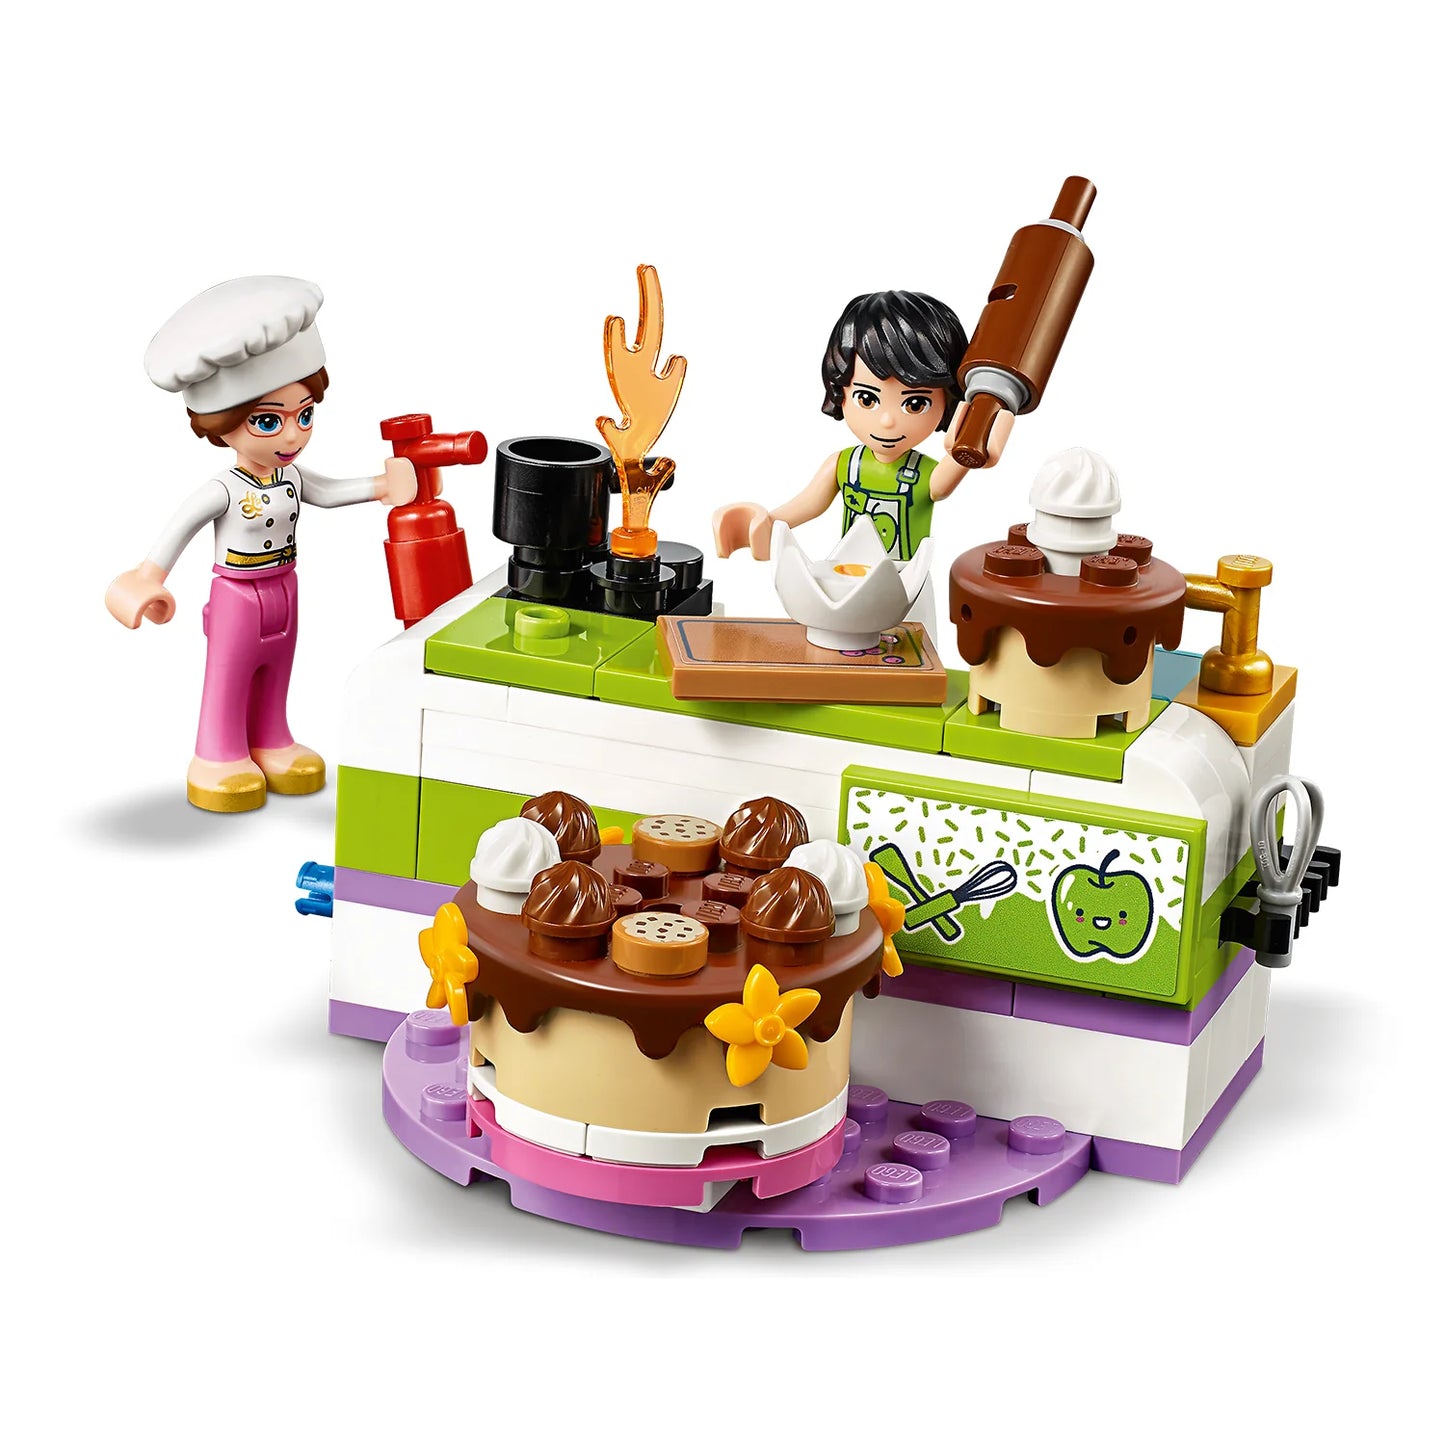 Bakwedstrijd-LEGO Friends